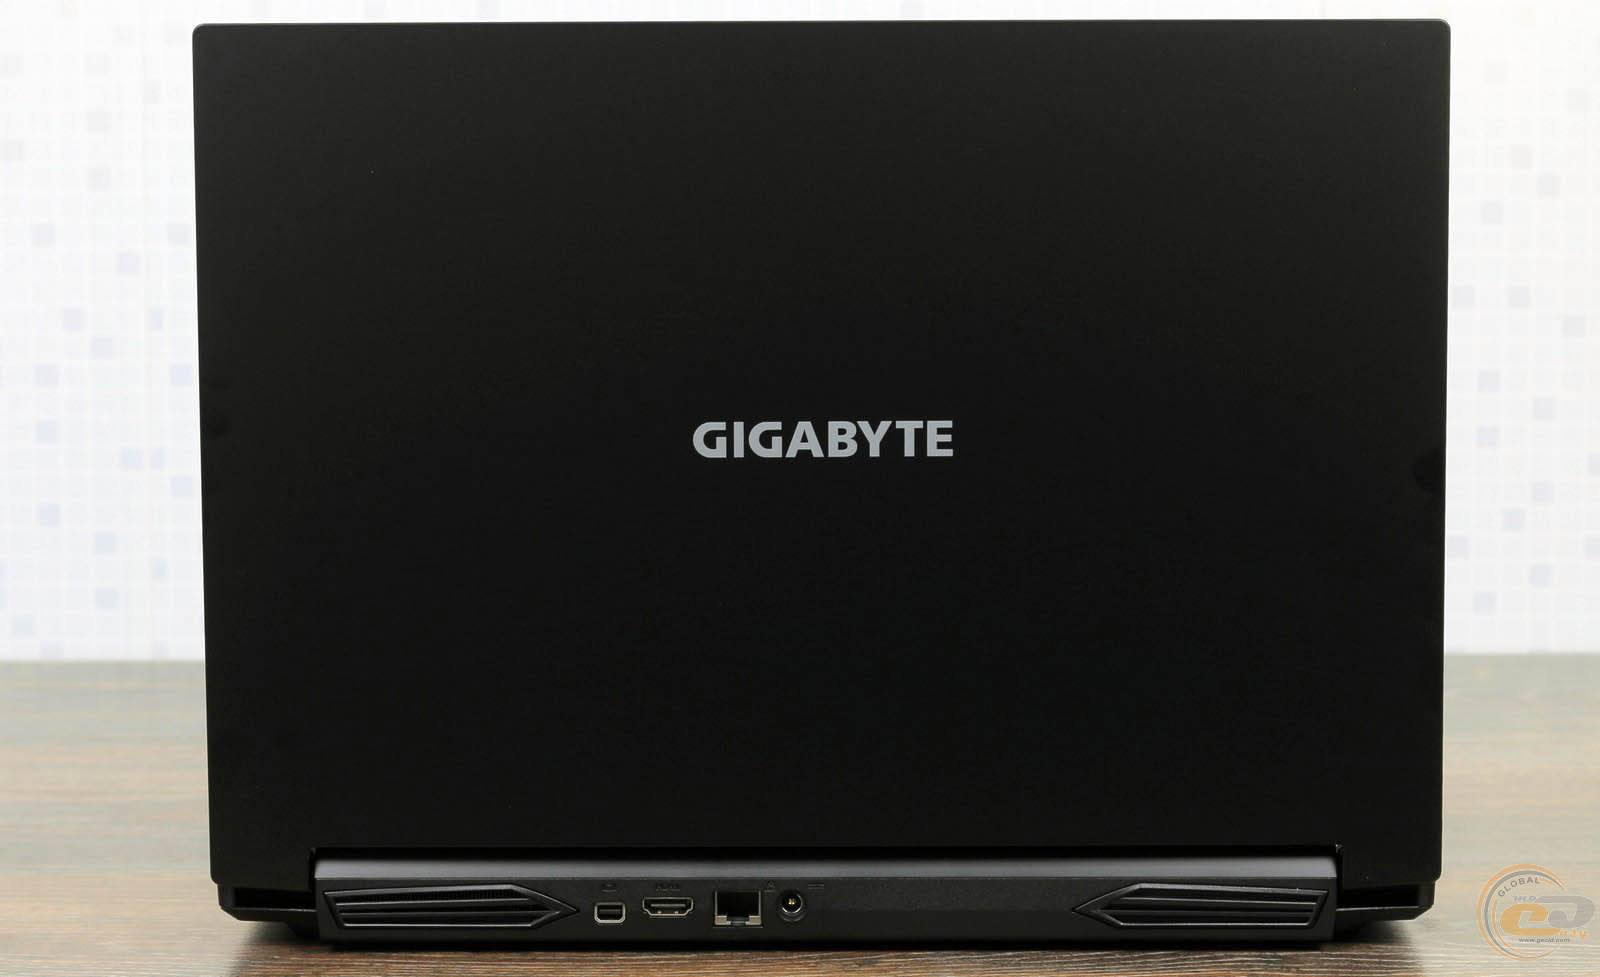 Gigabyte g5 kc. Gigabyte g5. Gigabyte g5 GD-51ee123so. Ноутбук Gigabyte g5 ge. Gigabyte g5 MD-51de123sd.